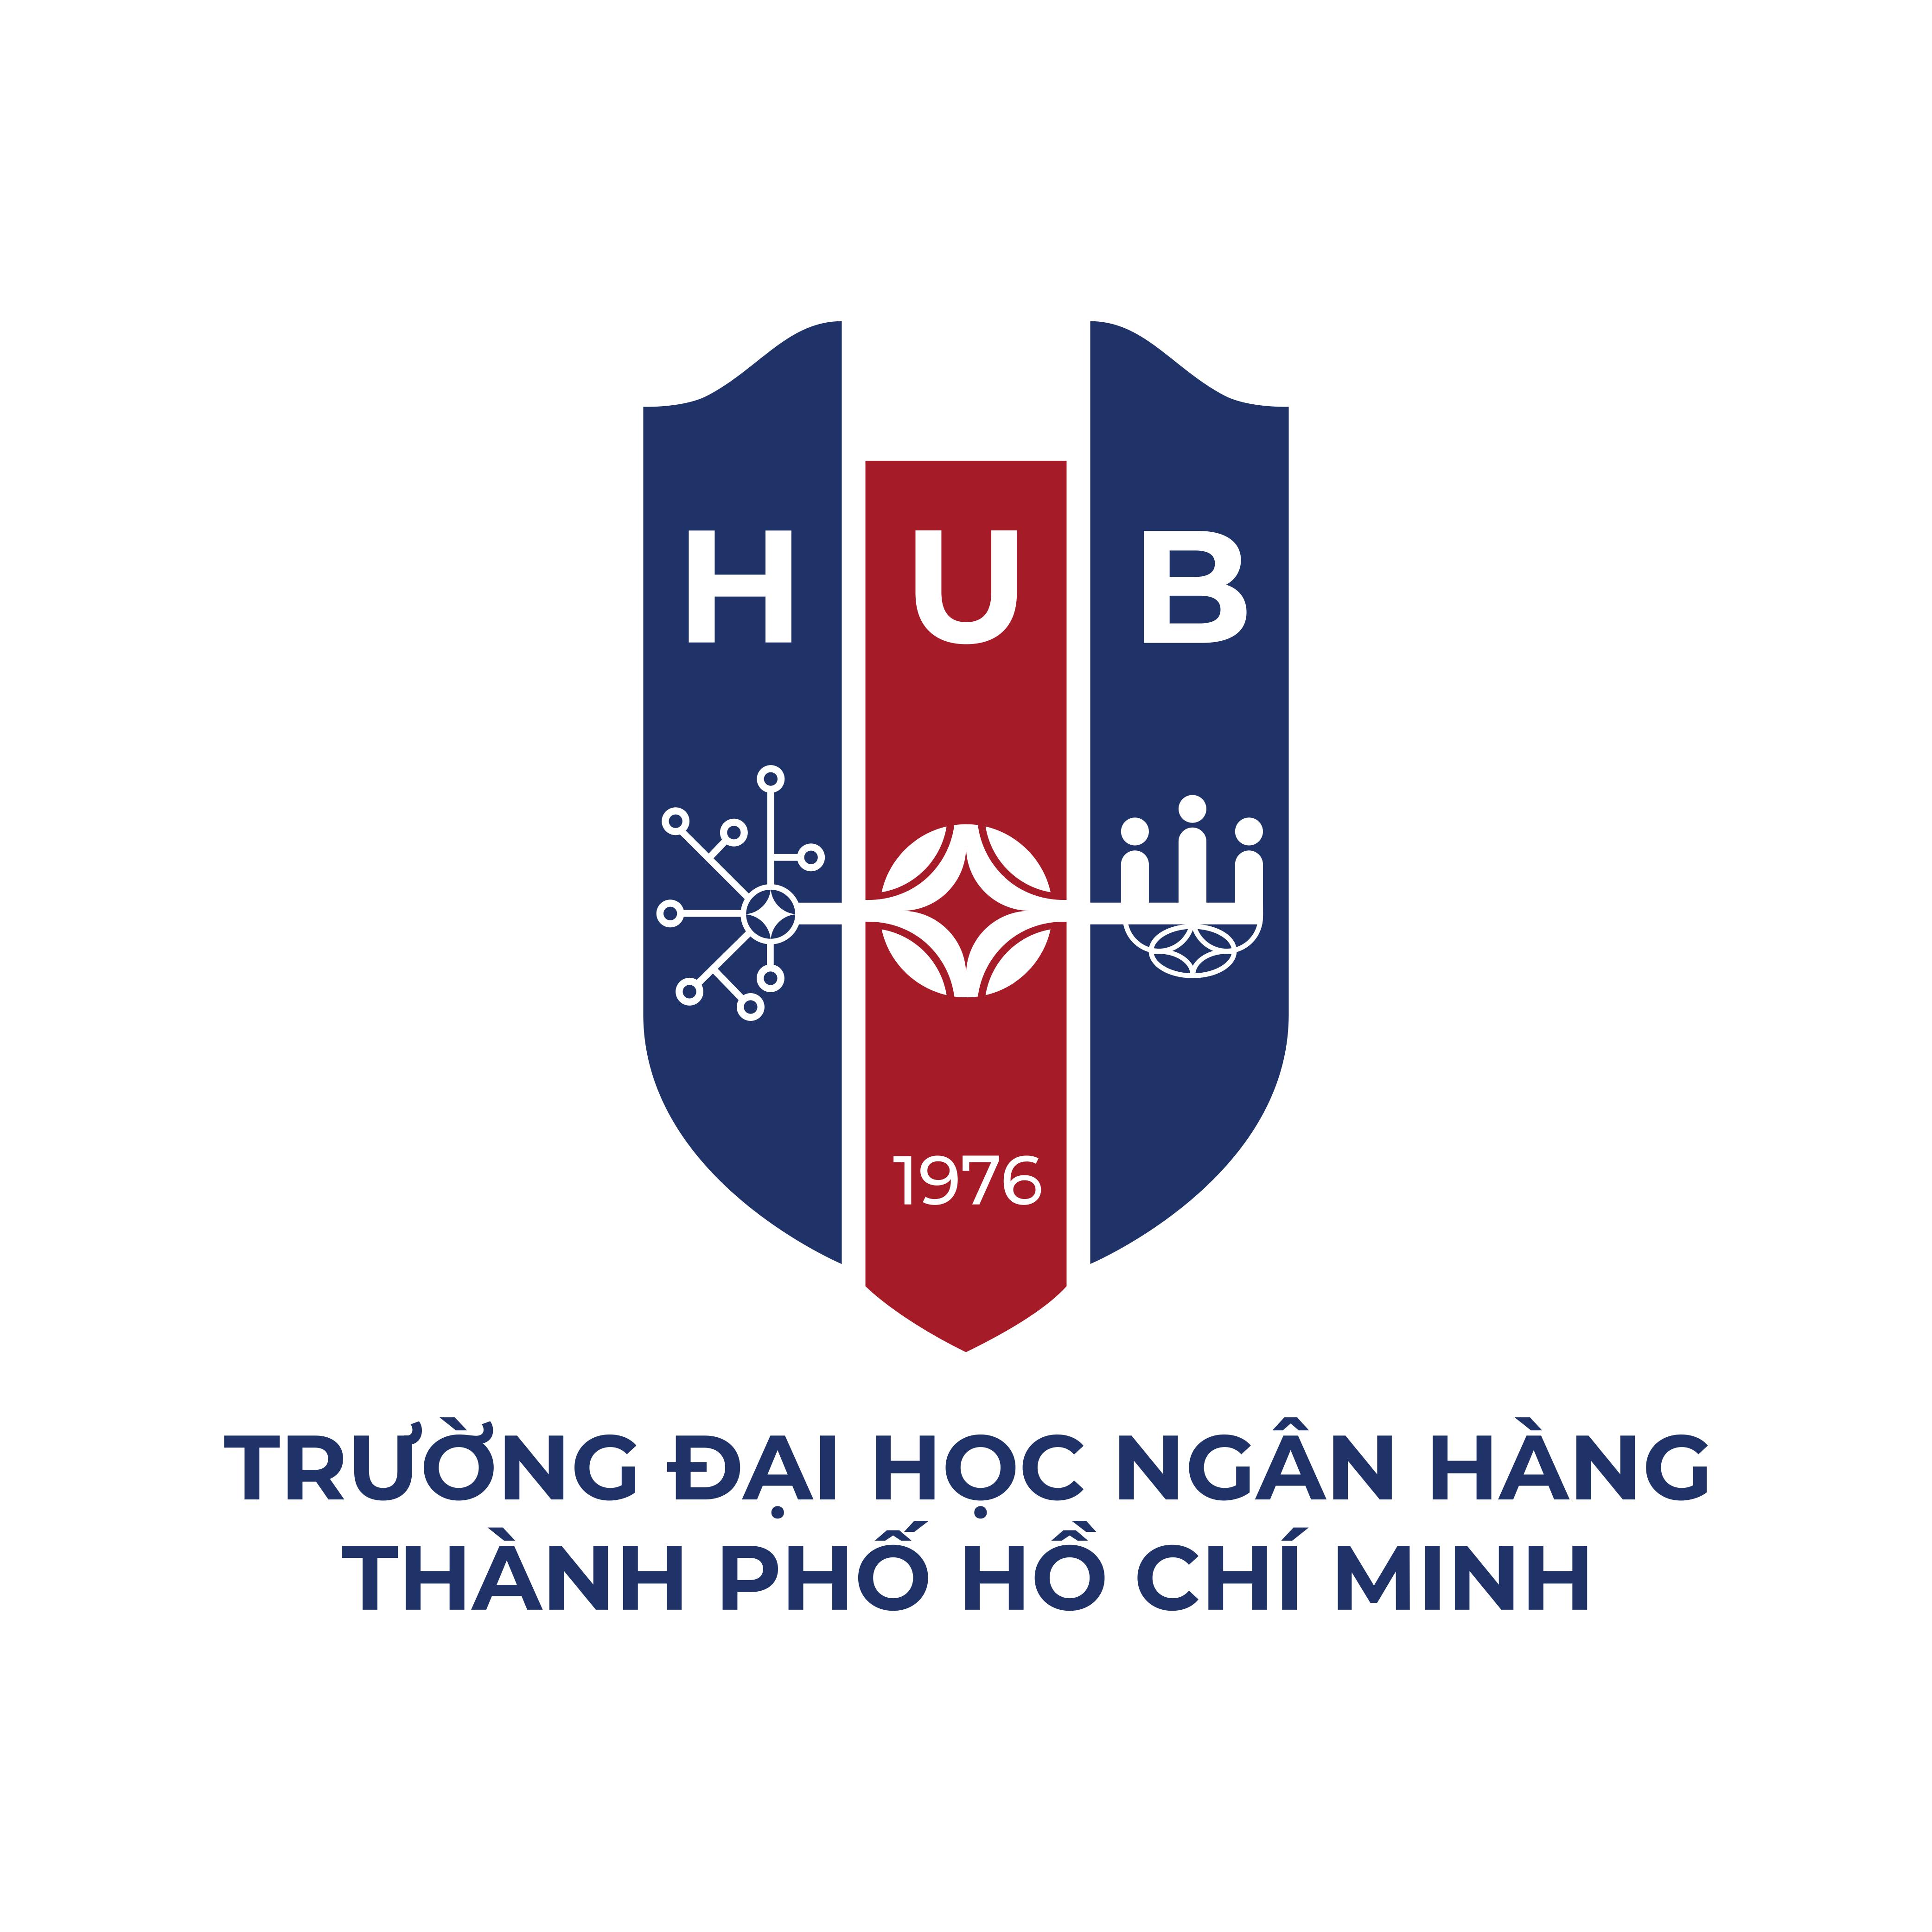 Thiết kế độc đáo cho logo trường đại học ngân hàng chuyên nghiệp và hiện đại